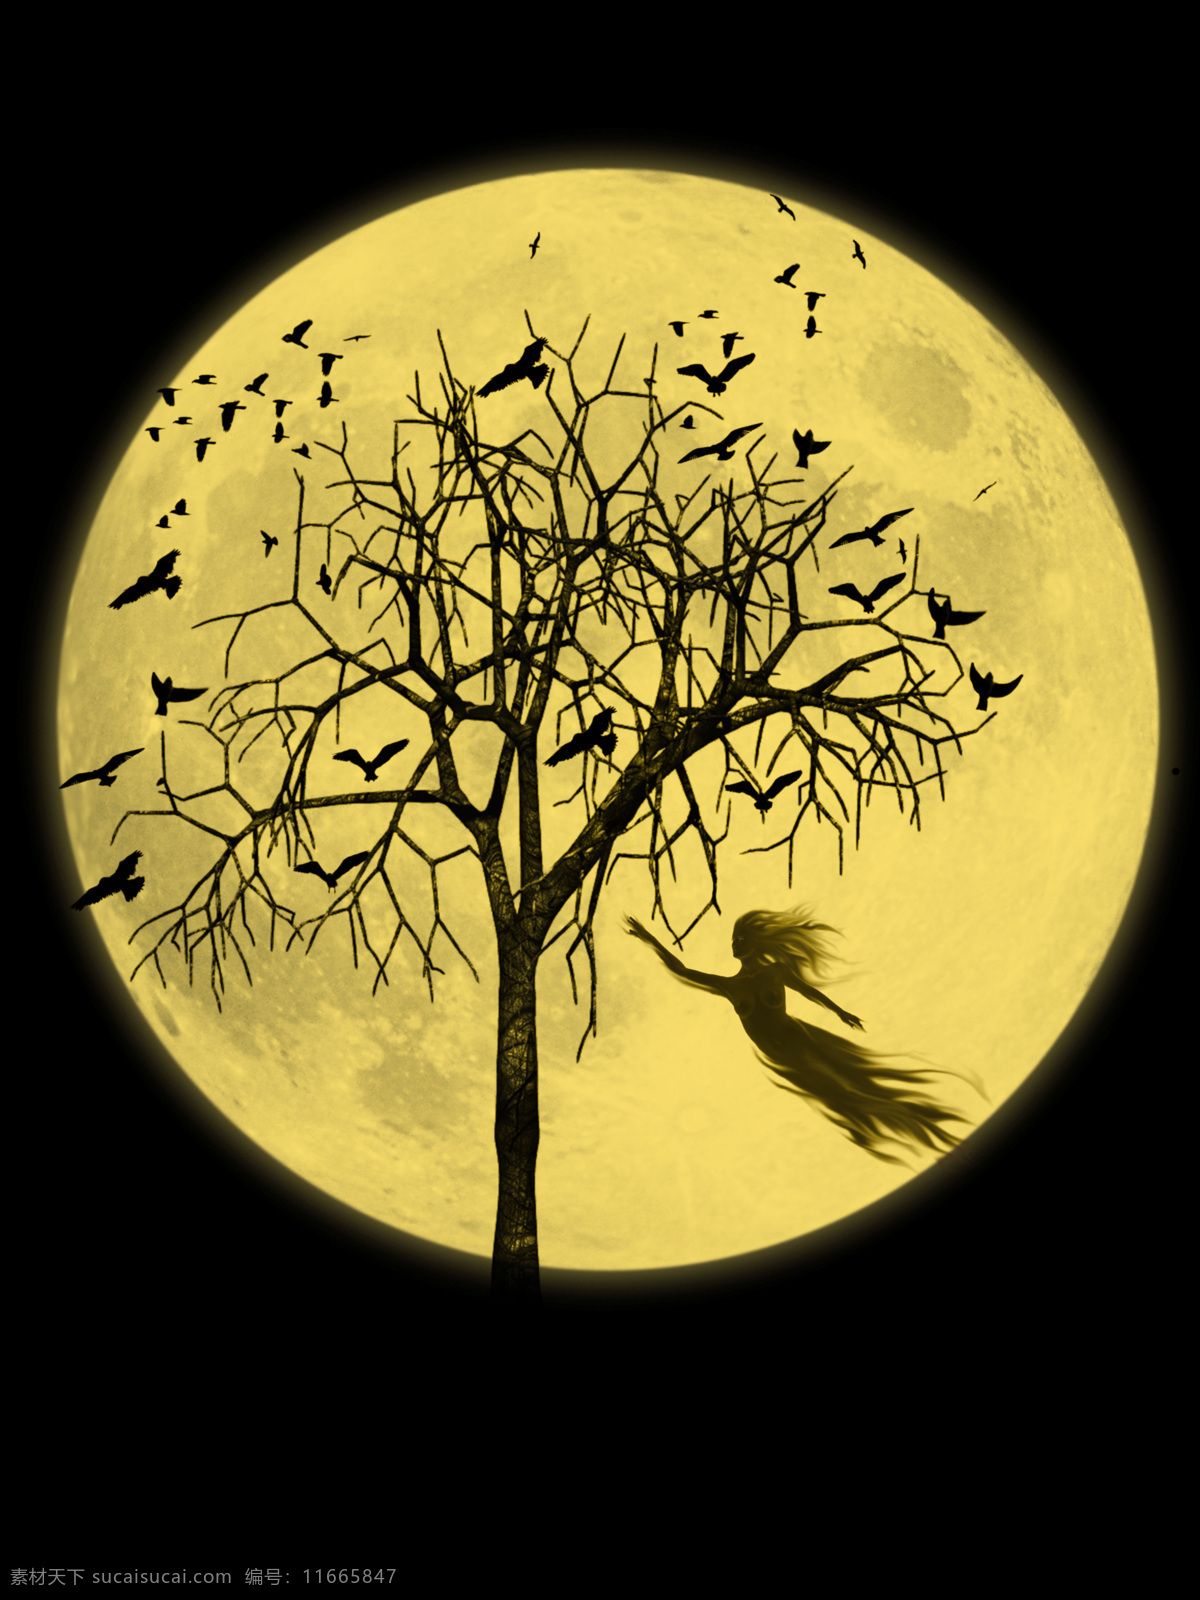 月亮 树木 乌鸦 女鬼 鬼魂 魂魄 万圣节素材 恐怖元素 其他人物 人物图片